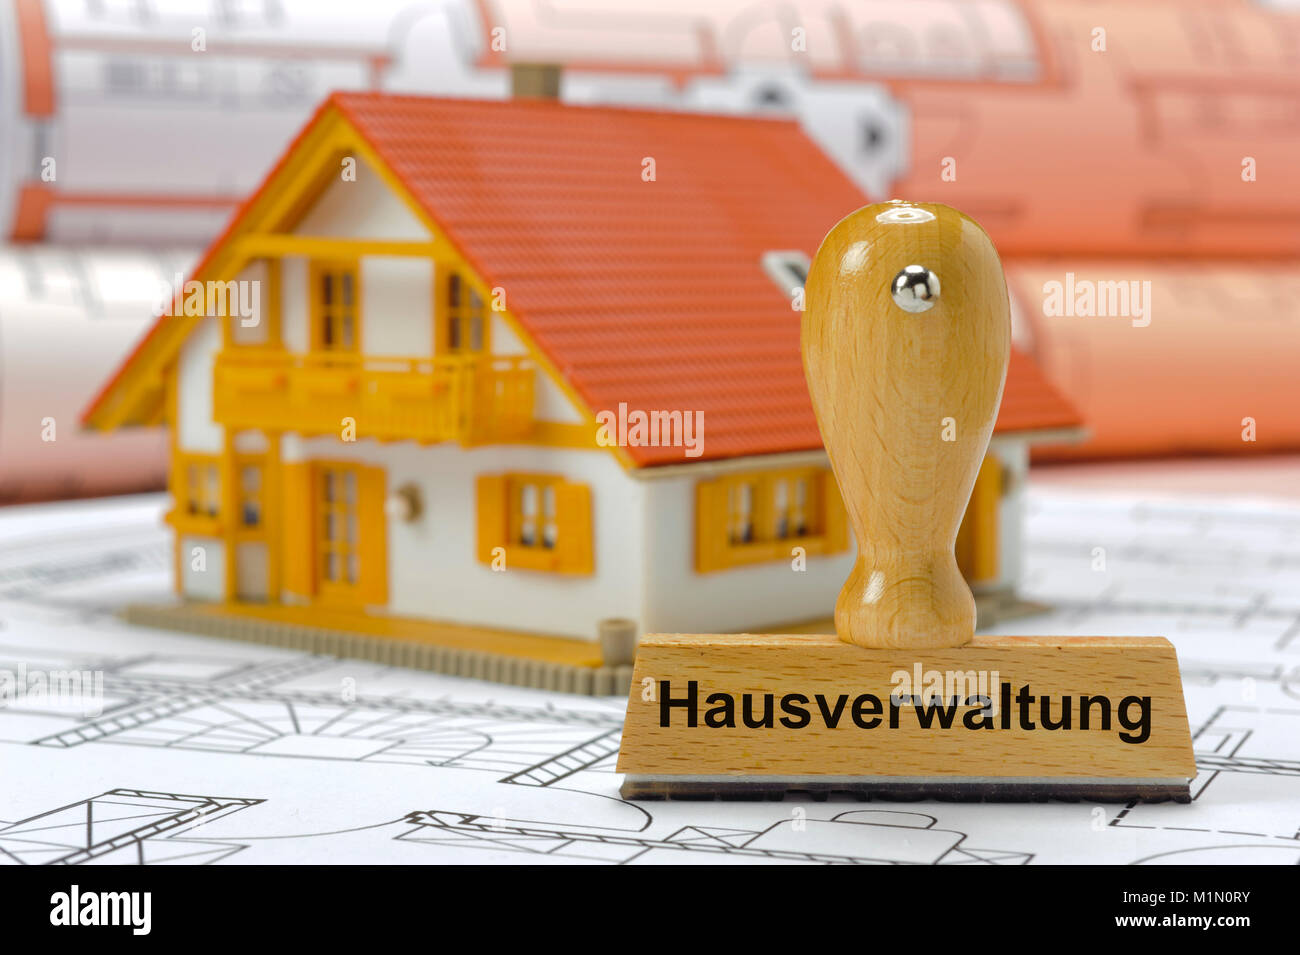 Hausverwaltung gedruckt auf Stempel mit Modellhaus Stock Photo